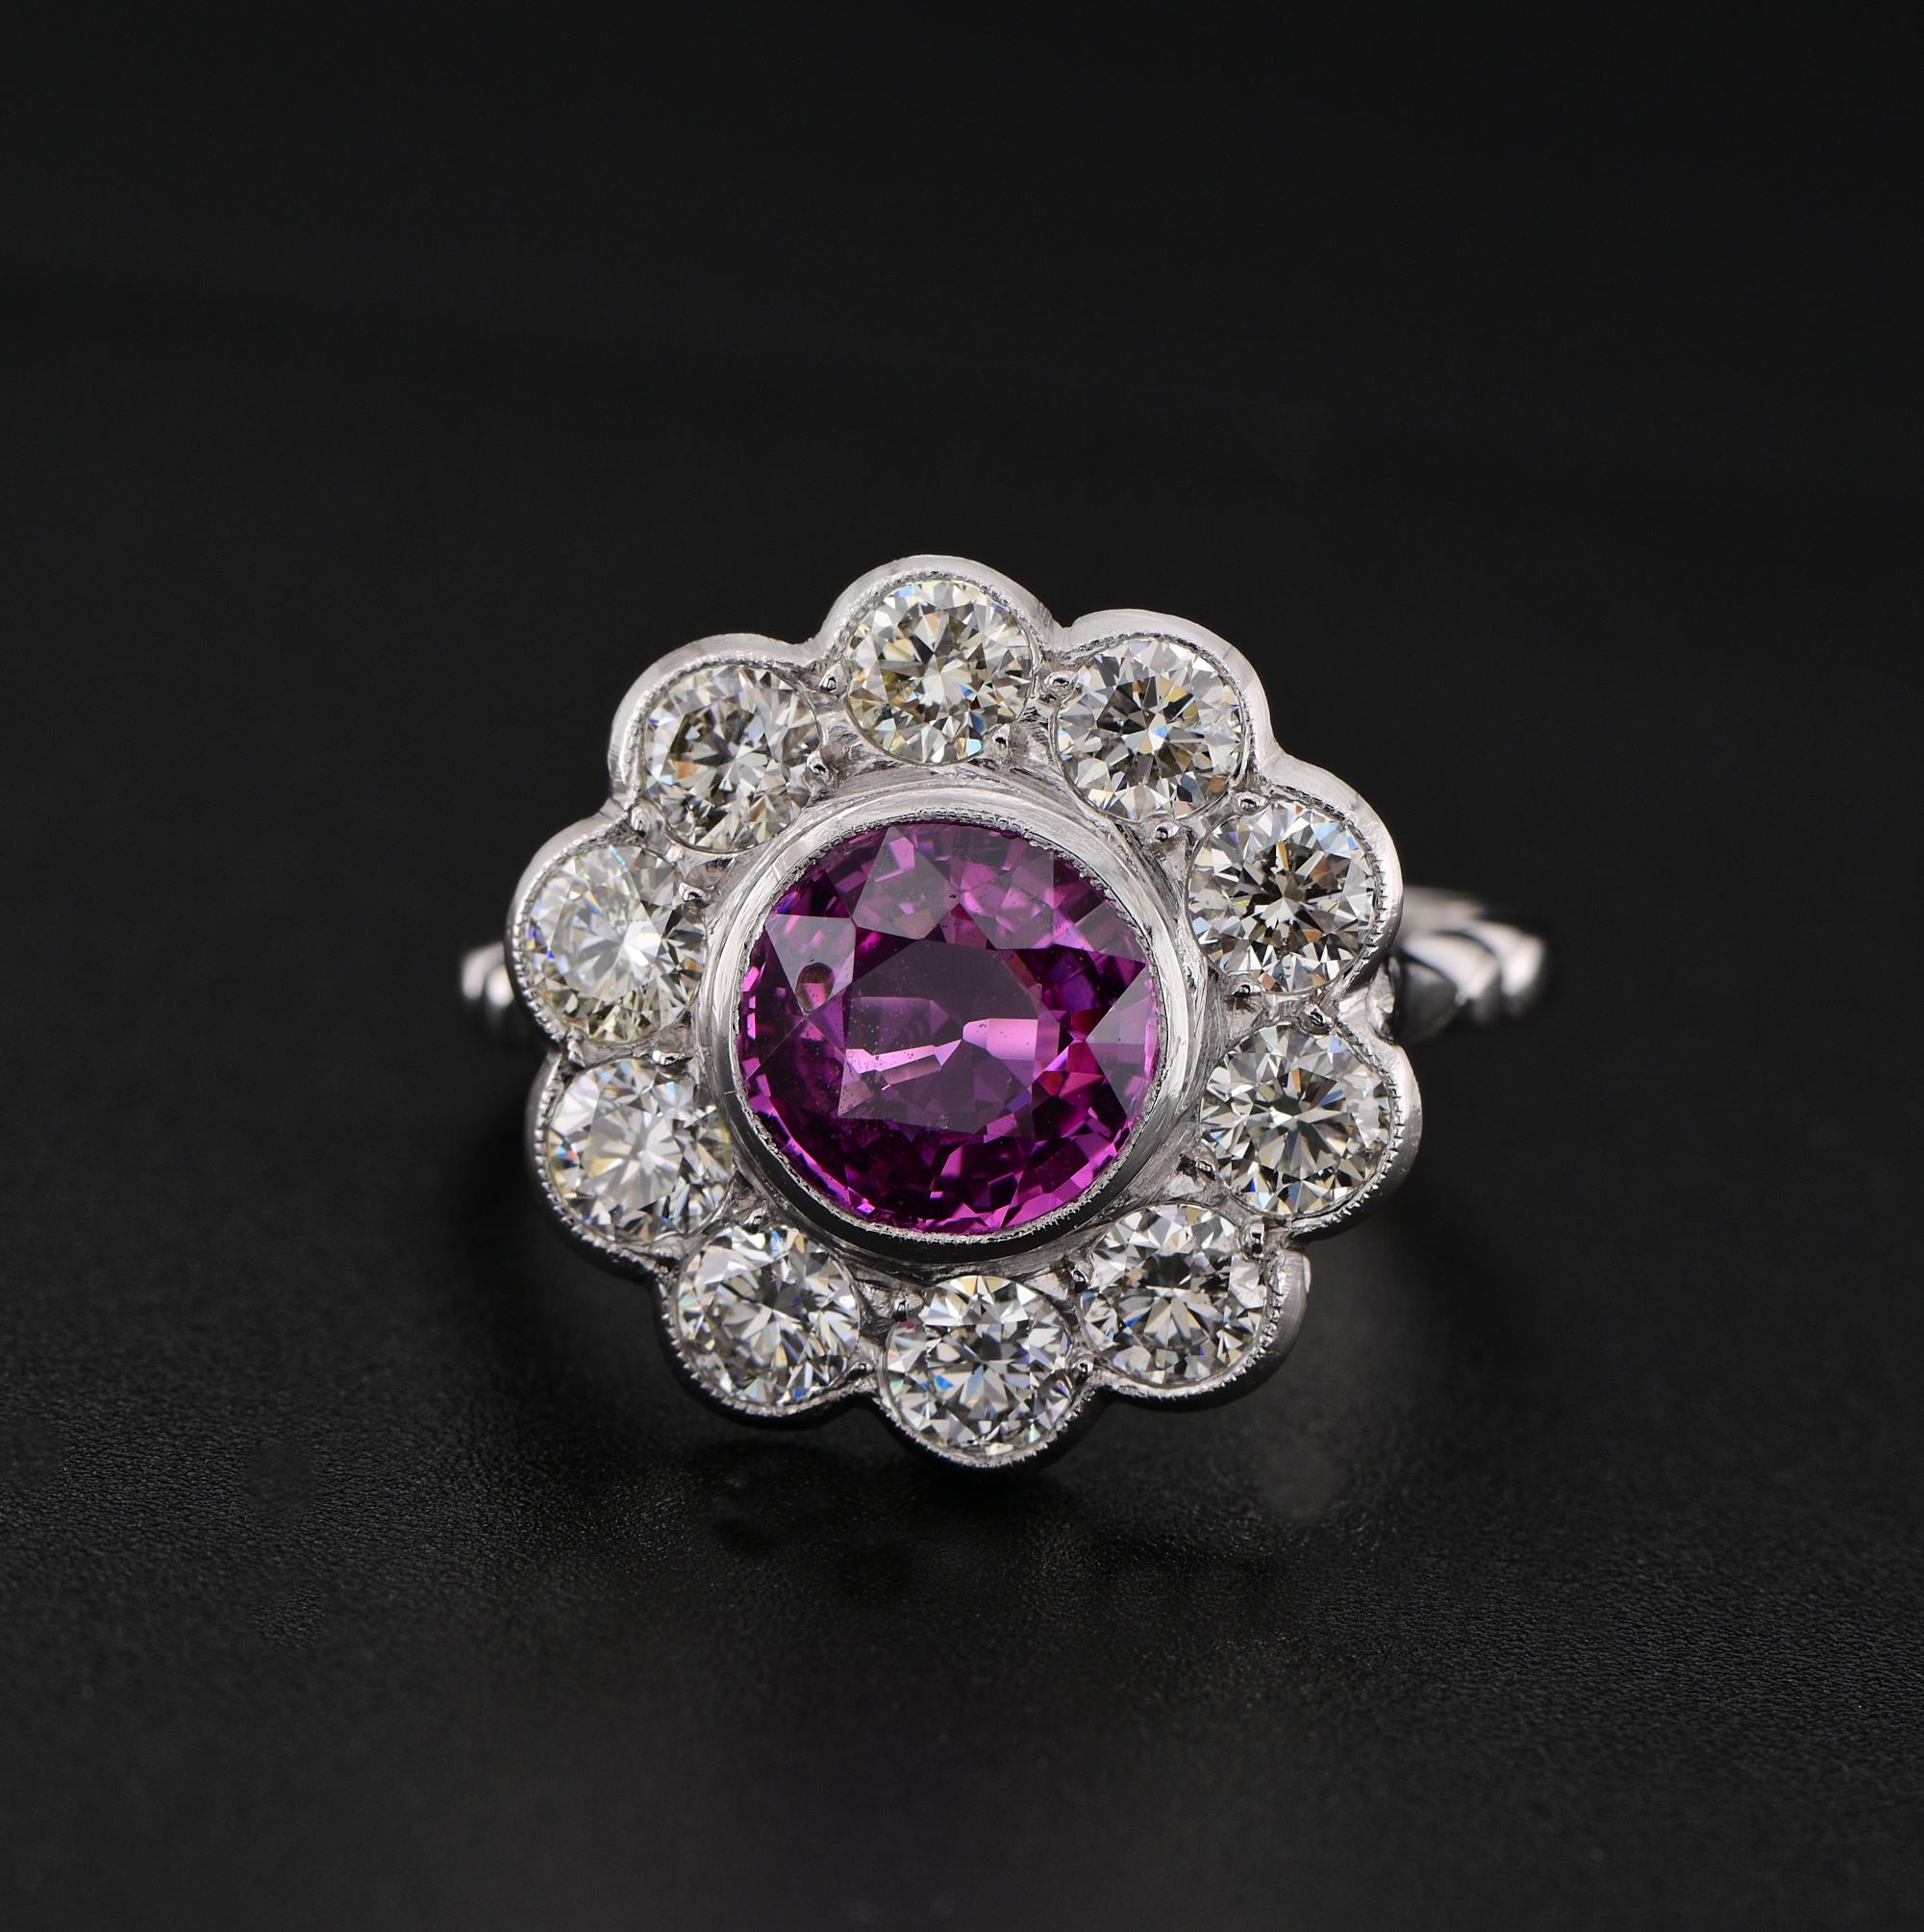 Rosa Appell
Ein majestätischer Vintage-Ring in traditioneller Clusterkomposition aus natürlichem rosa Saphir und reichem Diamantbesatz, handgefertigt in Platin (markiert) um 1950
Elegantes Cluster-Design, zusammengesetzt aus einem satten und üppigen